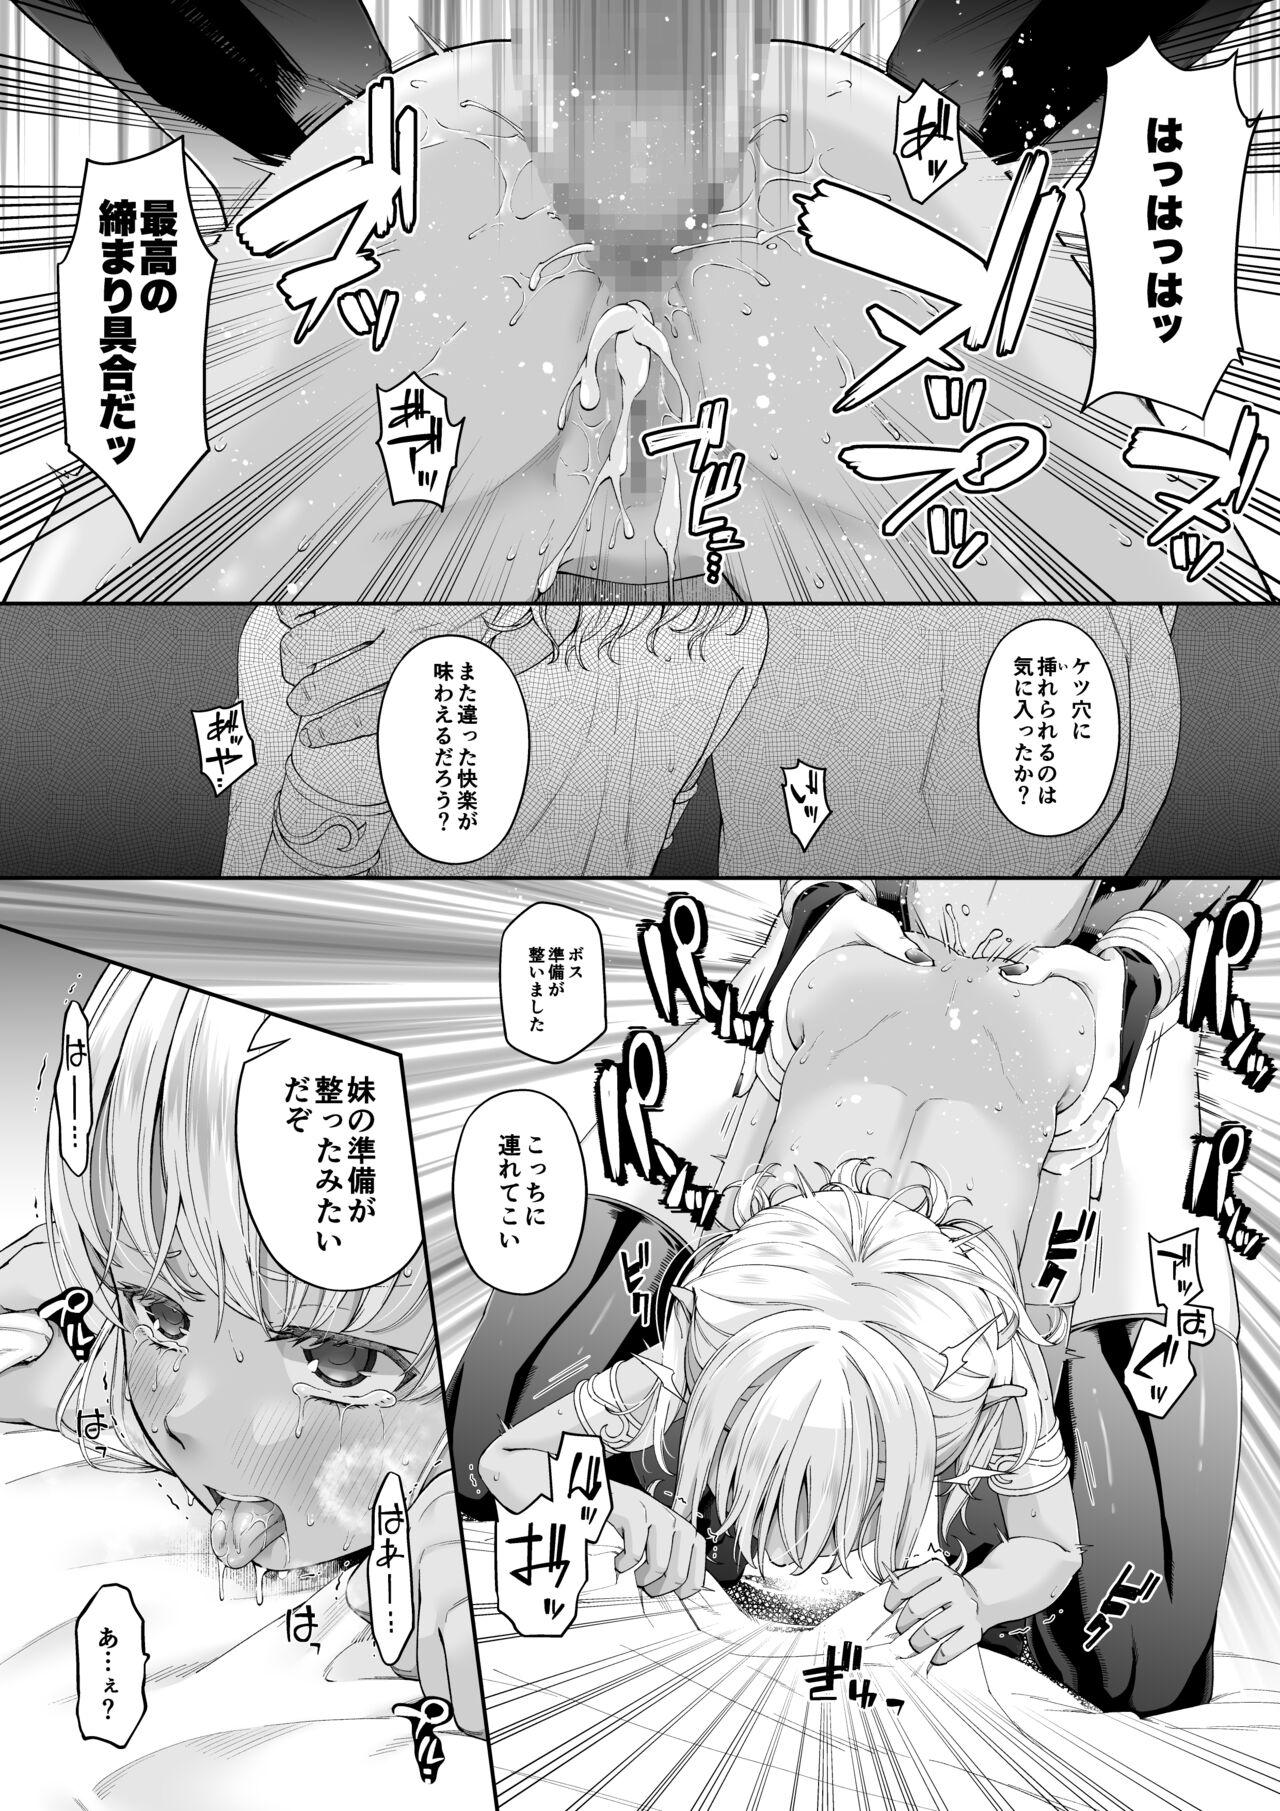 Cdzinha [DASHIMAKITAMAGO] Kakedashi Boukensha no Matsuro 4 [Ningen no ura shakai] Bōken-sha ni akogareta Erufu shimai - 2 - Original Deep Throat - Page 8